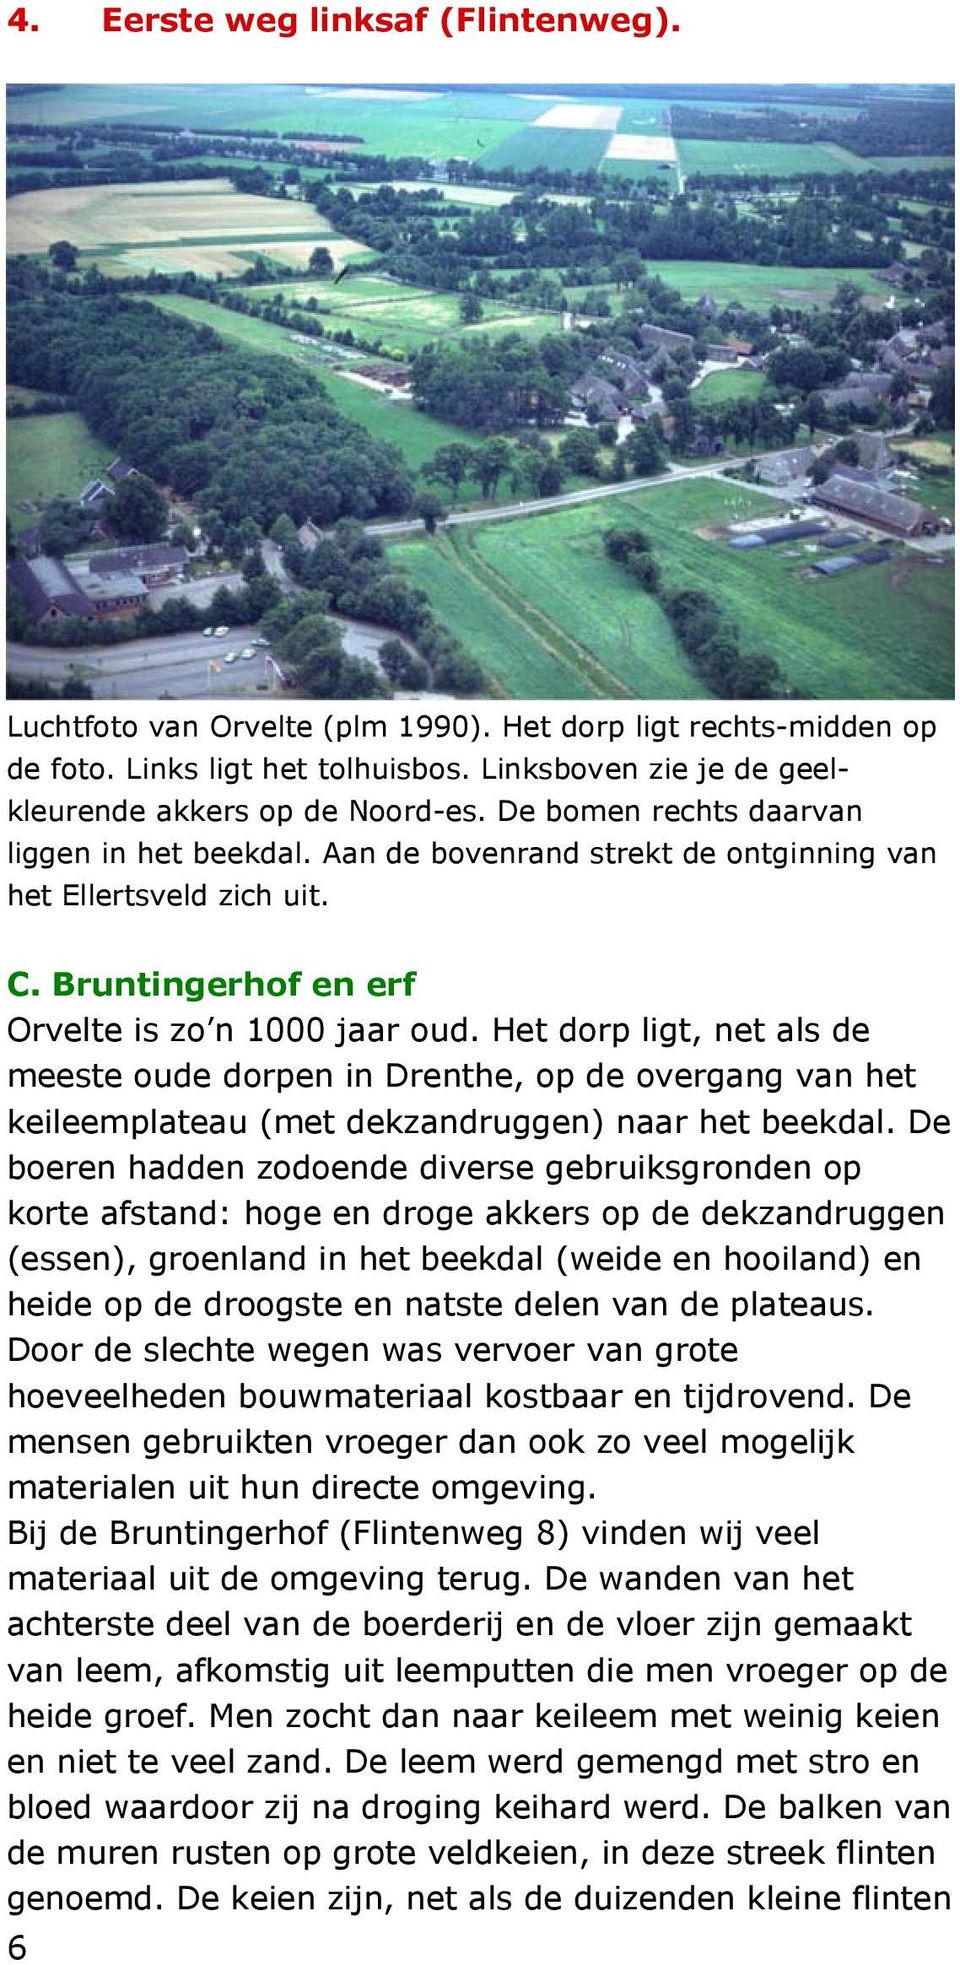 Het dorp ligt, net als de meeste oude dorpen in Drenthe, op de overgang van het keileemplateau (met dekzandruggen) naar het beekdal.